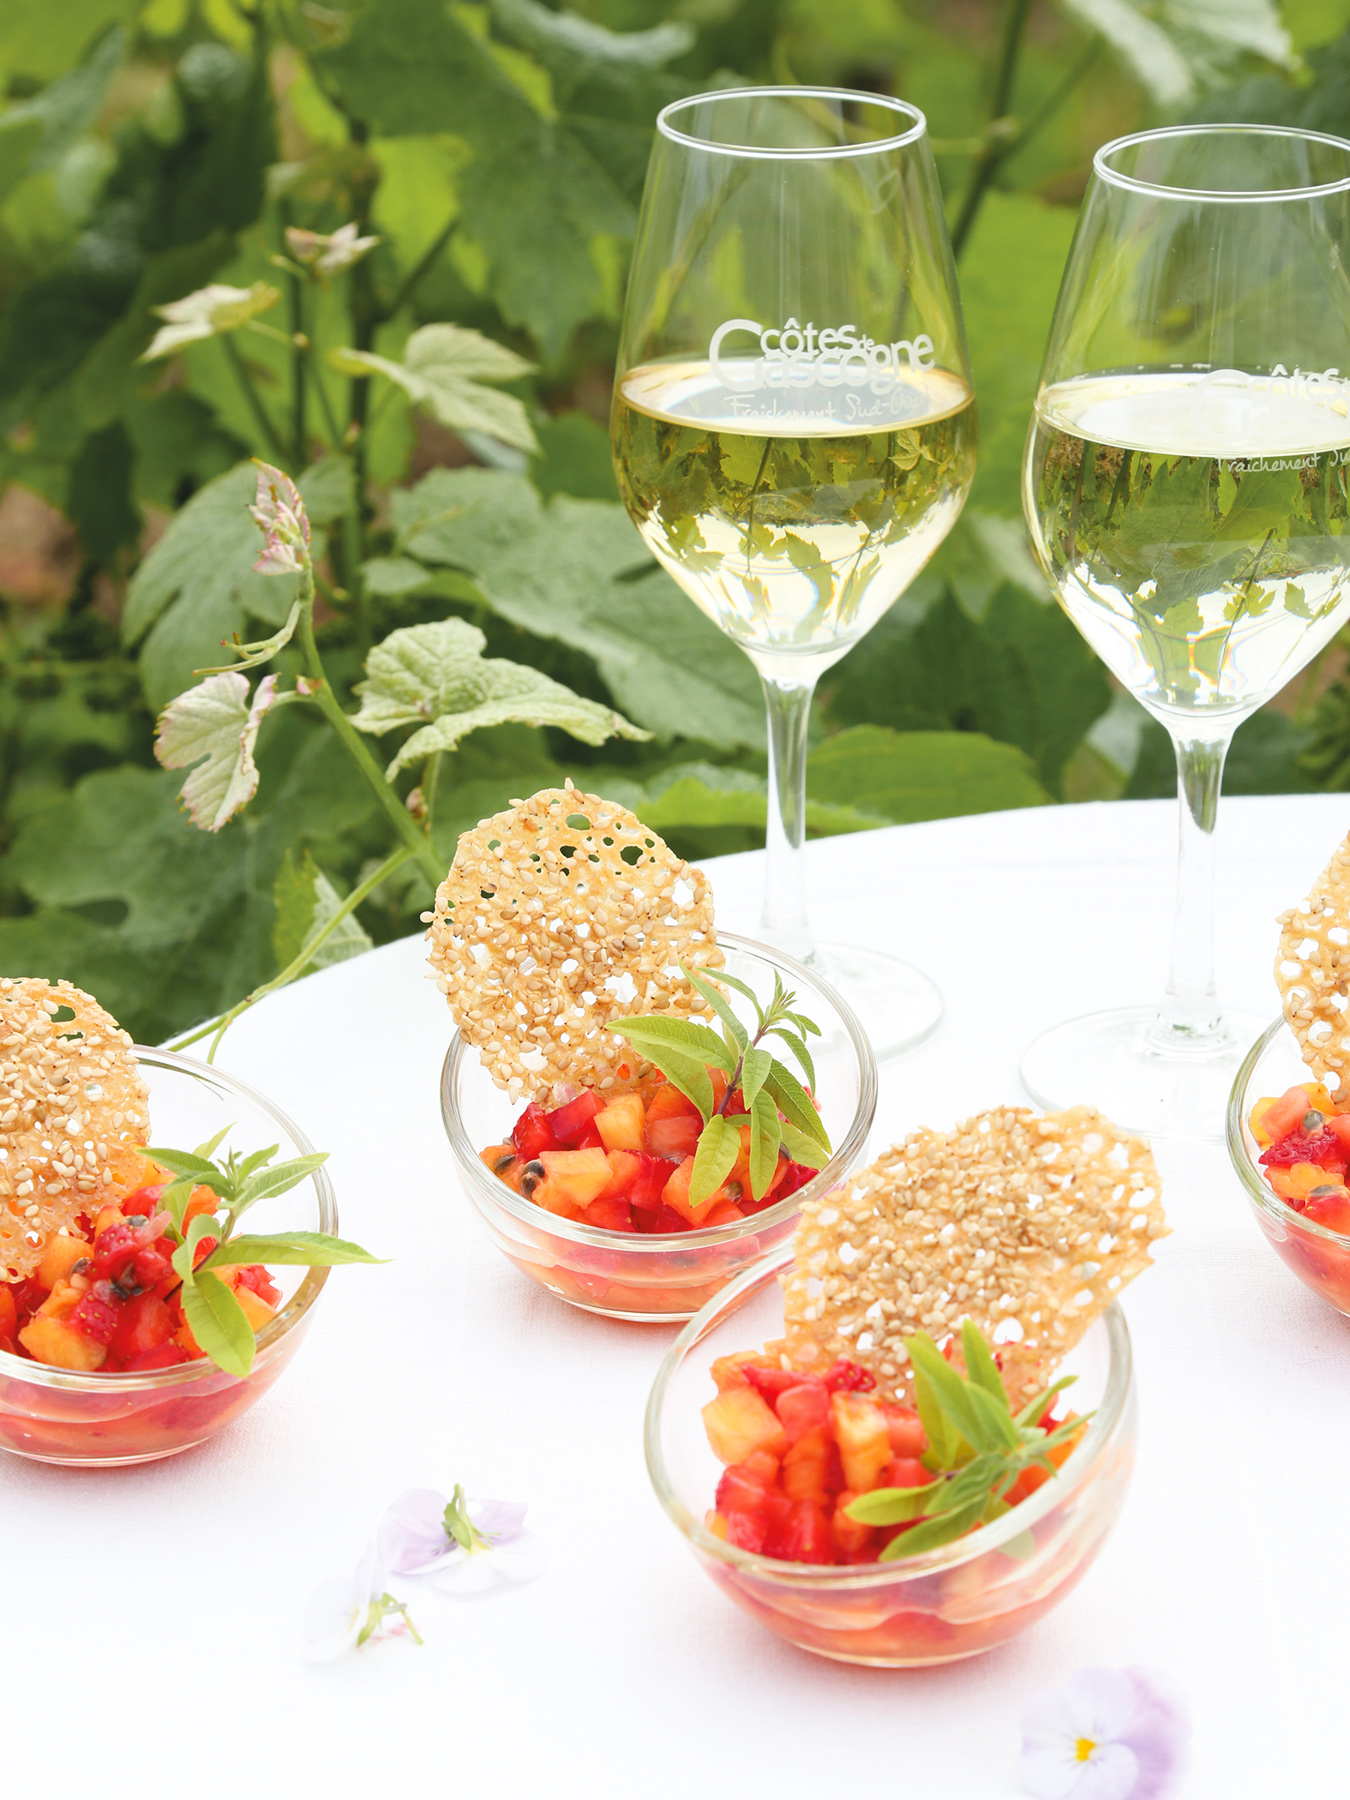 Leaf - Recette de salade de fruits et tuile croustillante au sésame. Accord mets et vins côte de Gascogne. Avec @Petitsbeguins et @LaWINEista